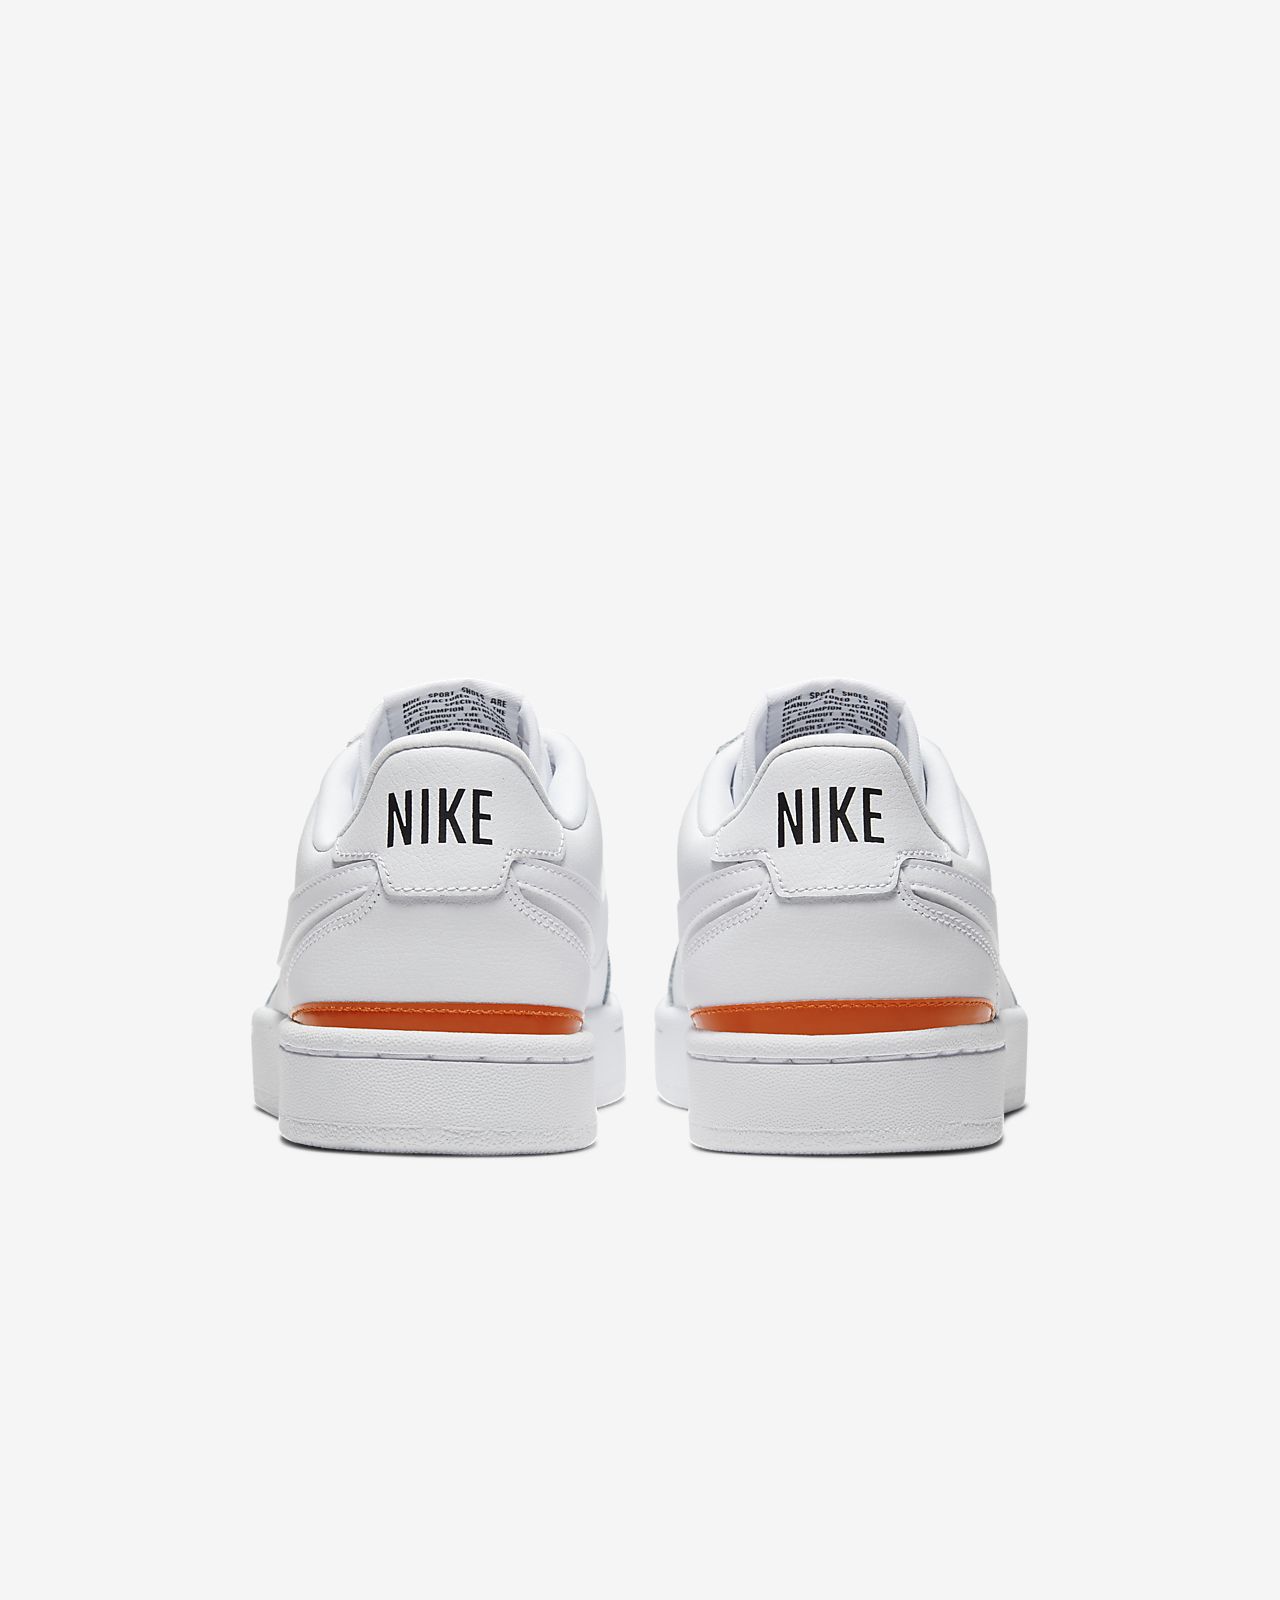 nike orange and white shoes